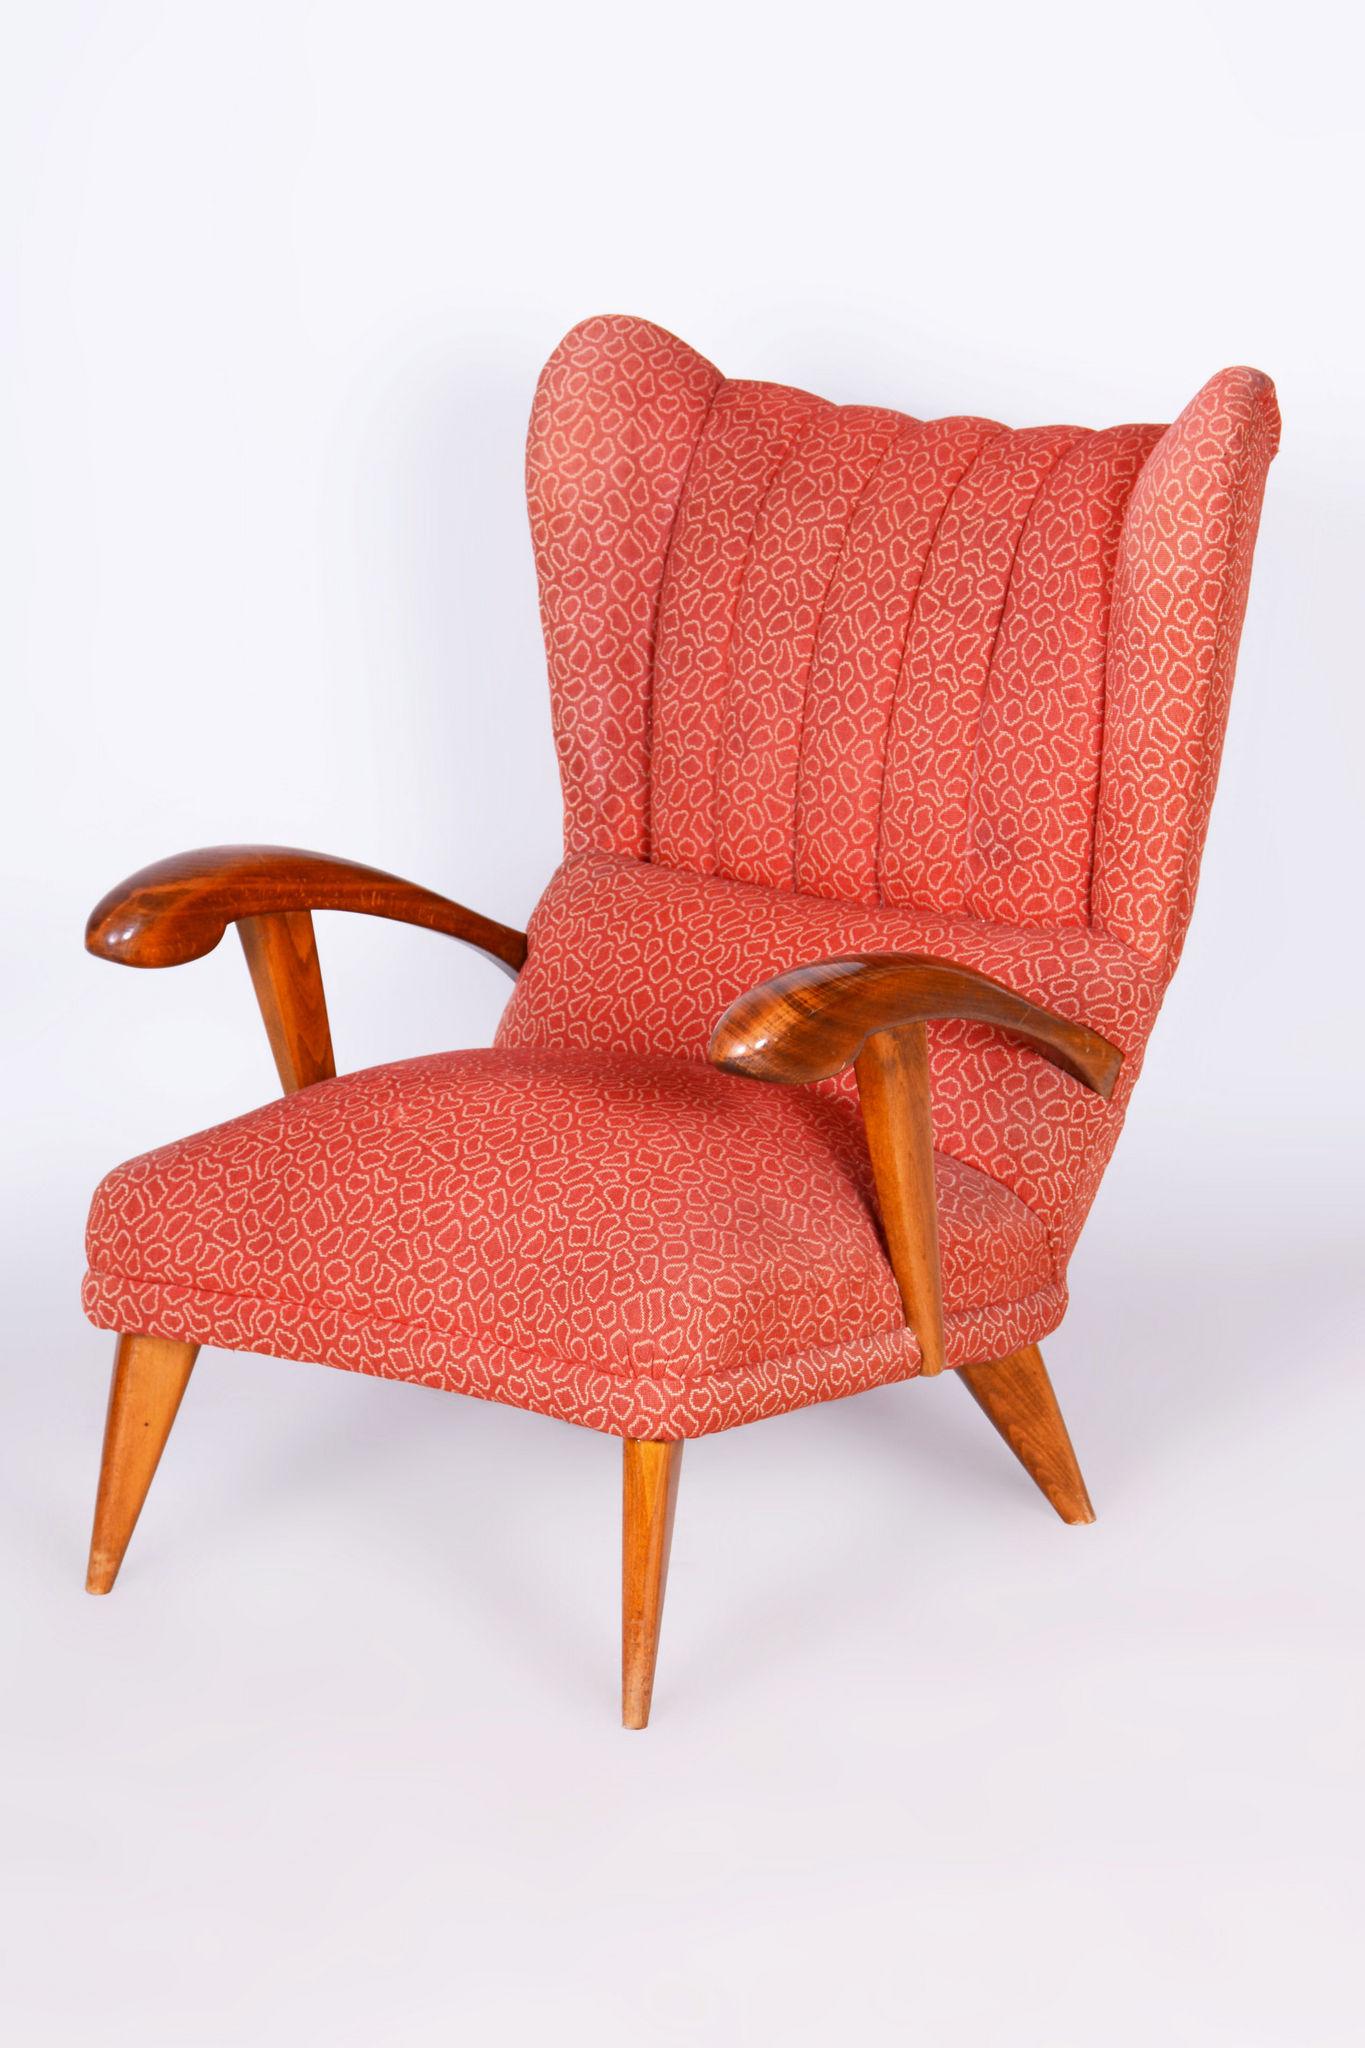 Ce fauteuil très confortable et populaire a été conçu par l'architecte Jan Vaněk au début de son activité.
La garniture traditionnelle à ressorts est d'origine, bien conservée et dégagée. Le tissu de la couverture, conçu par le professeur Antonín